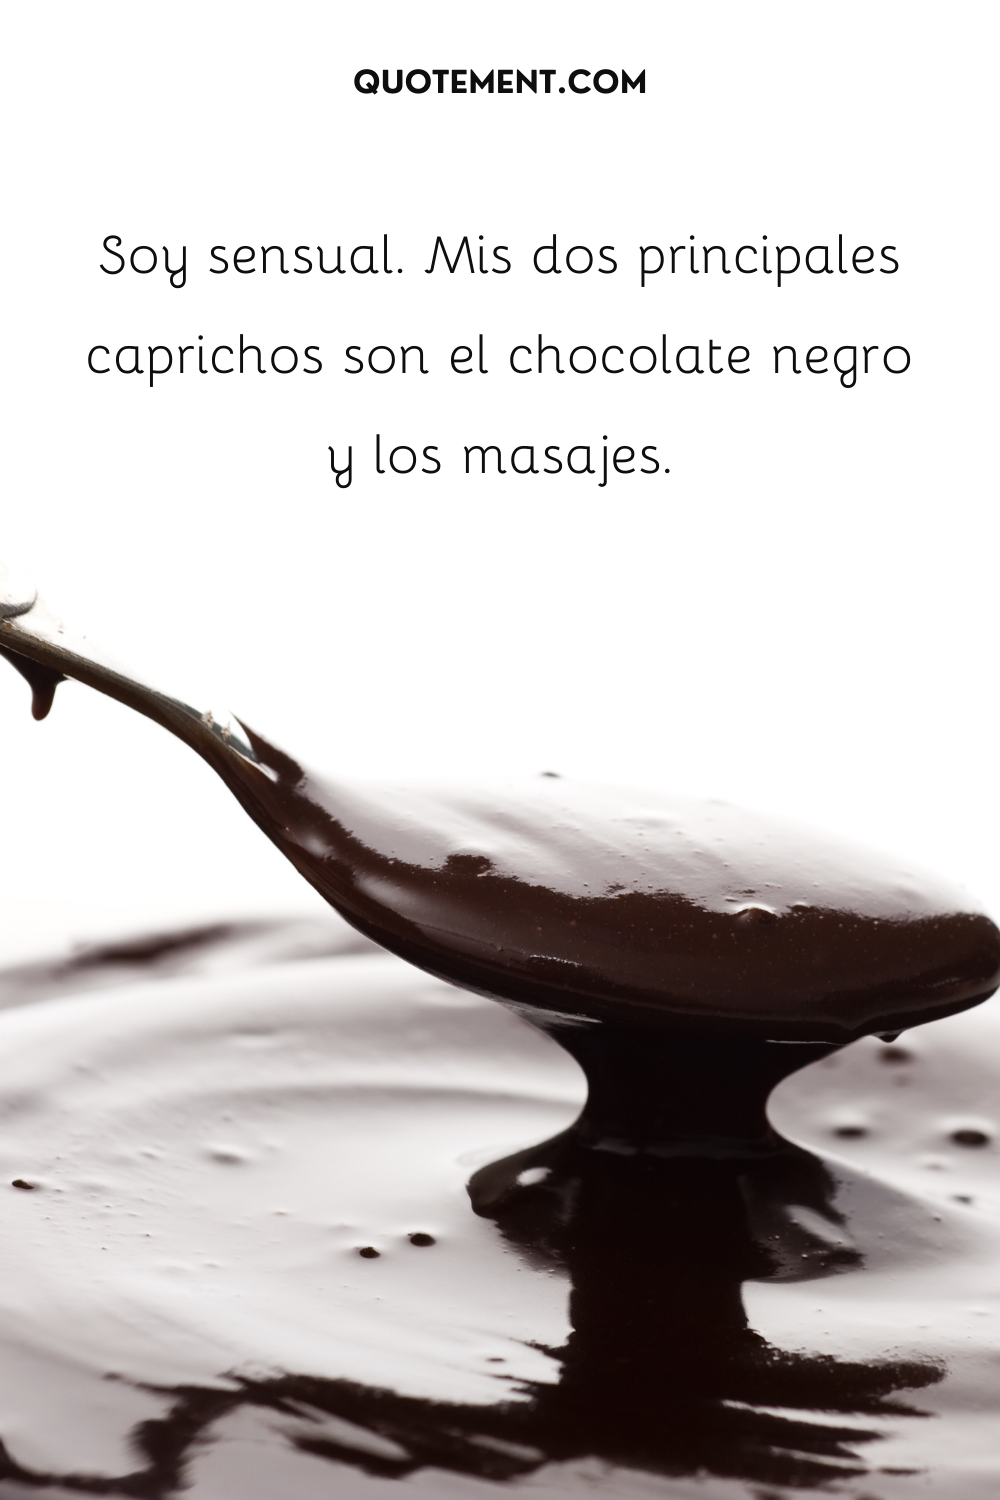 Soy sensual. Mis dos principales placeres son el chocolate negro y los masajes.